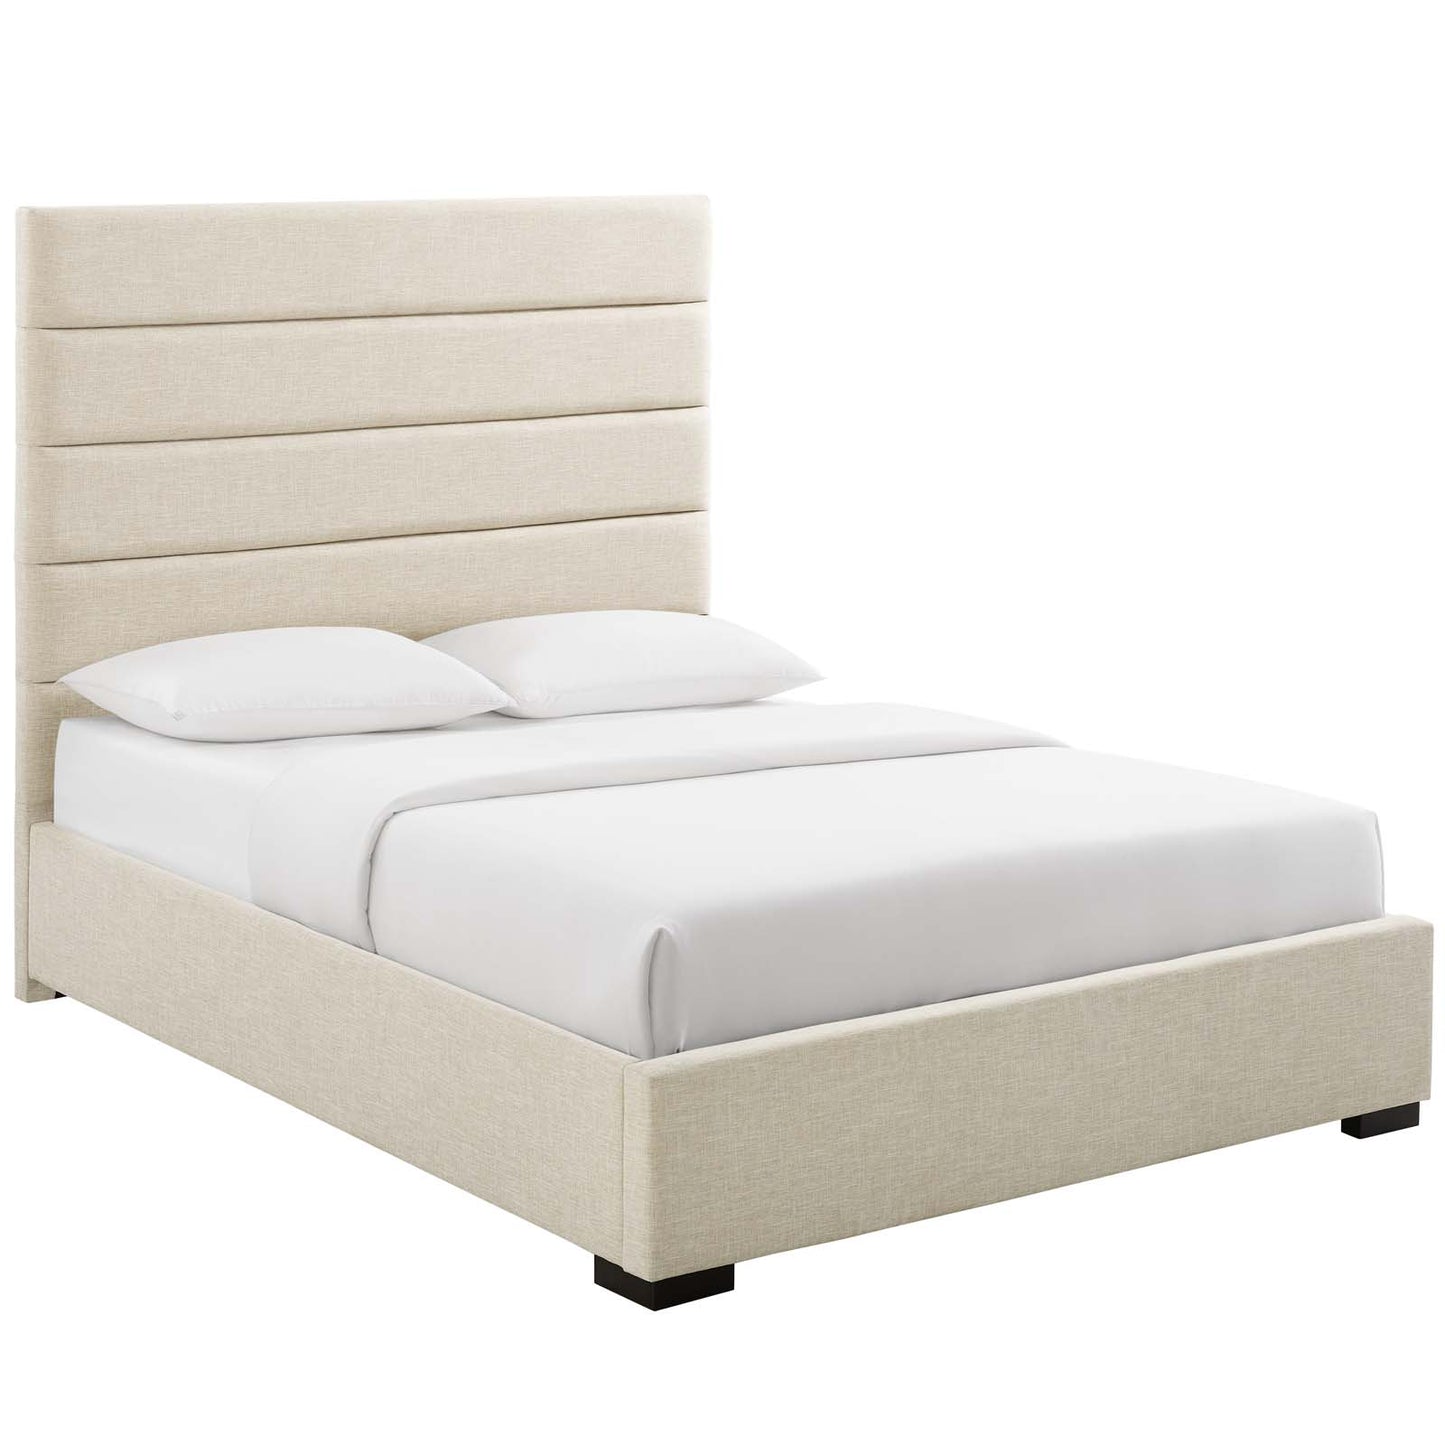 Genevieve Queen Upholstered Fabric Platform Bed Beige MOD-6049-BEI